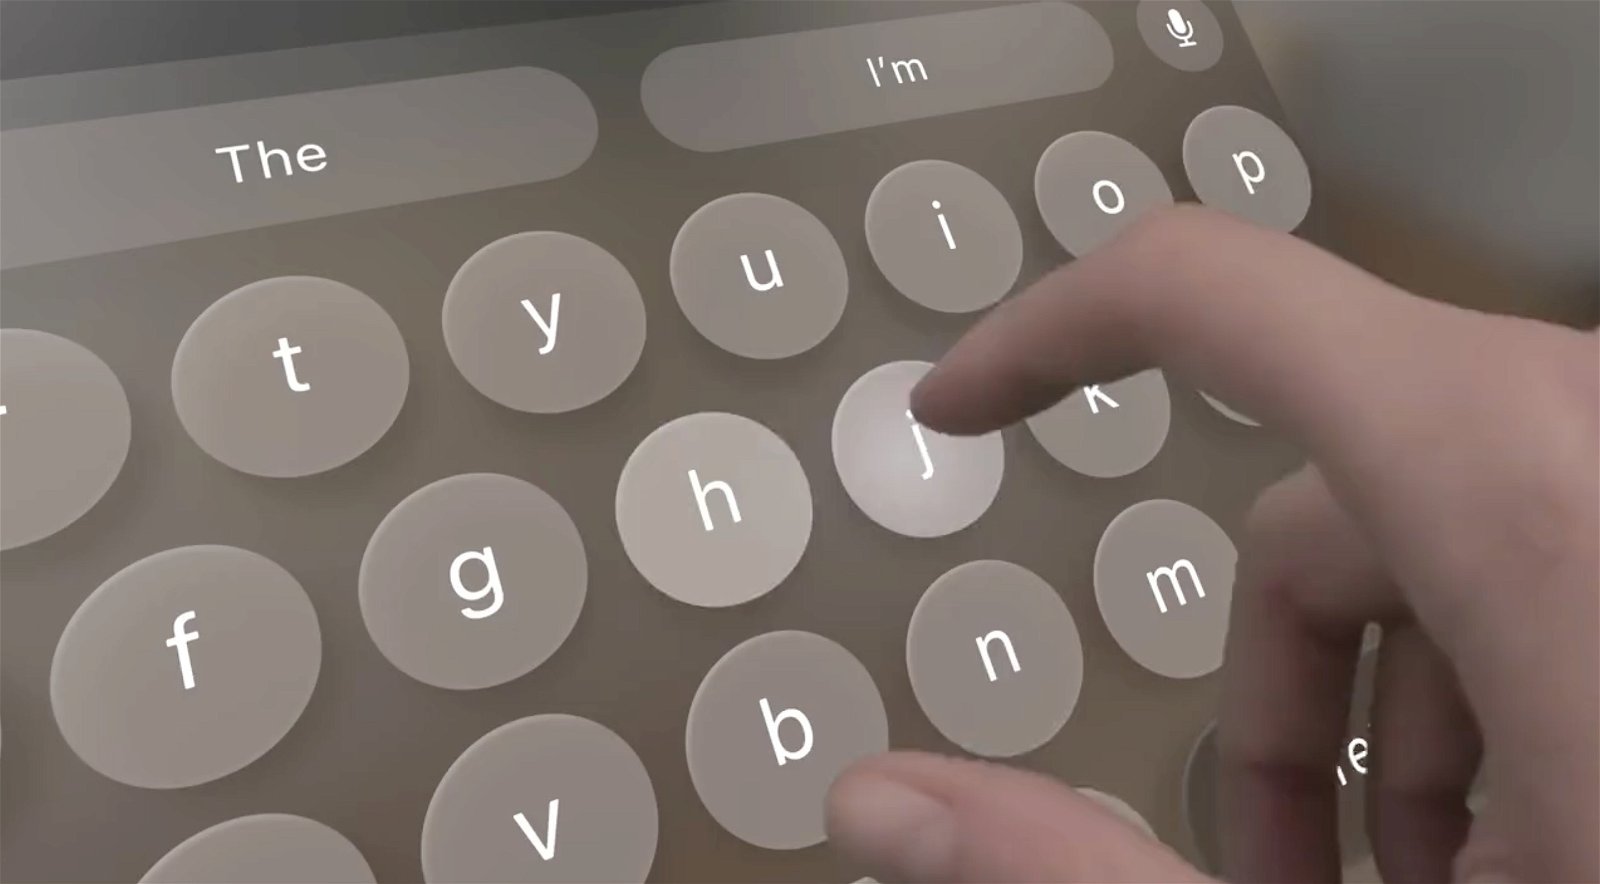 El teclado virtual de visionOS luce tal cual como en iOS